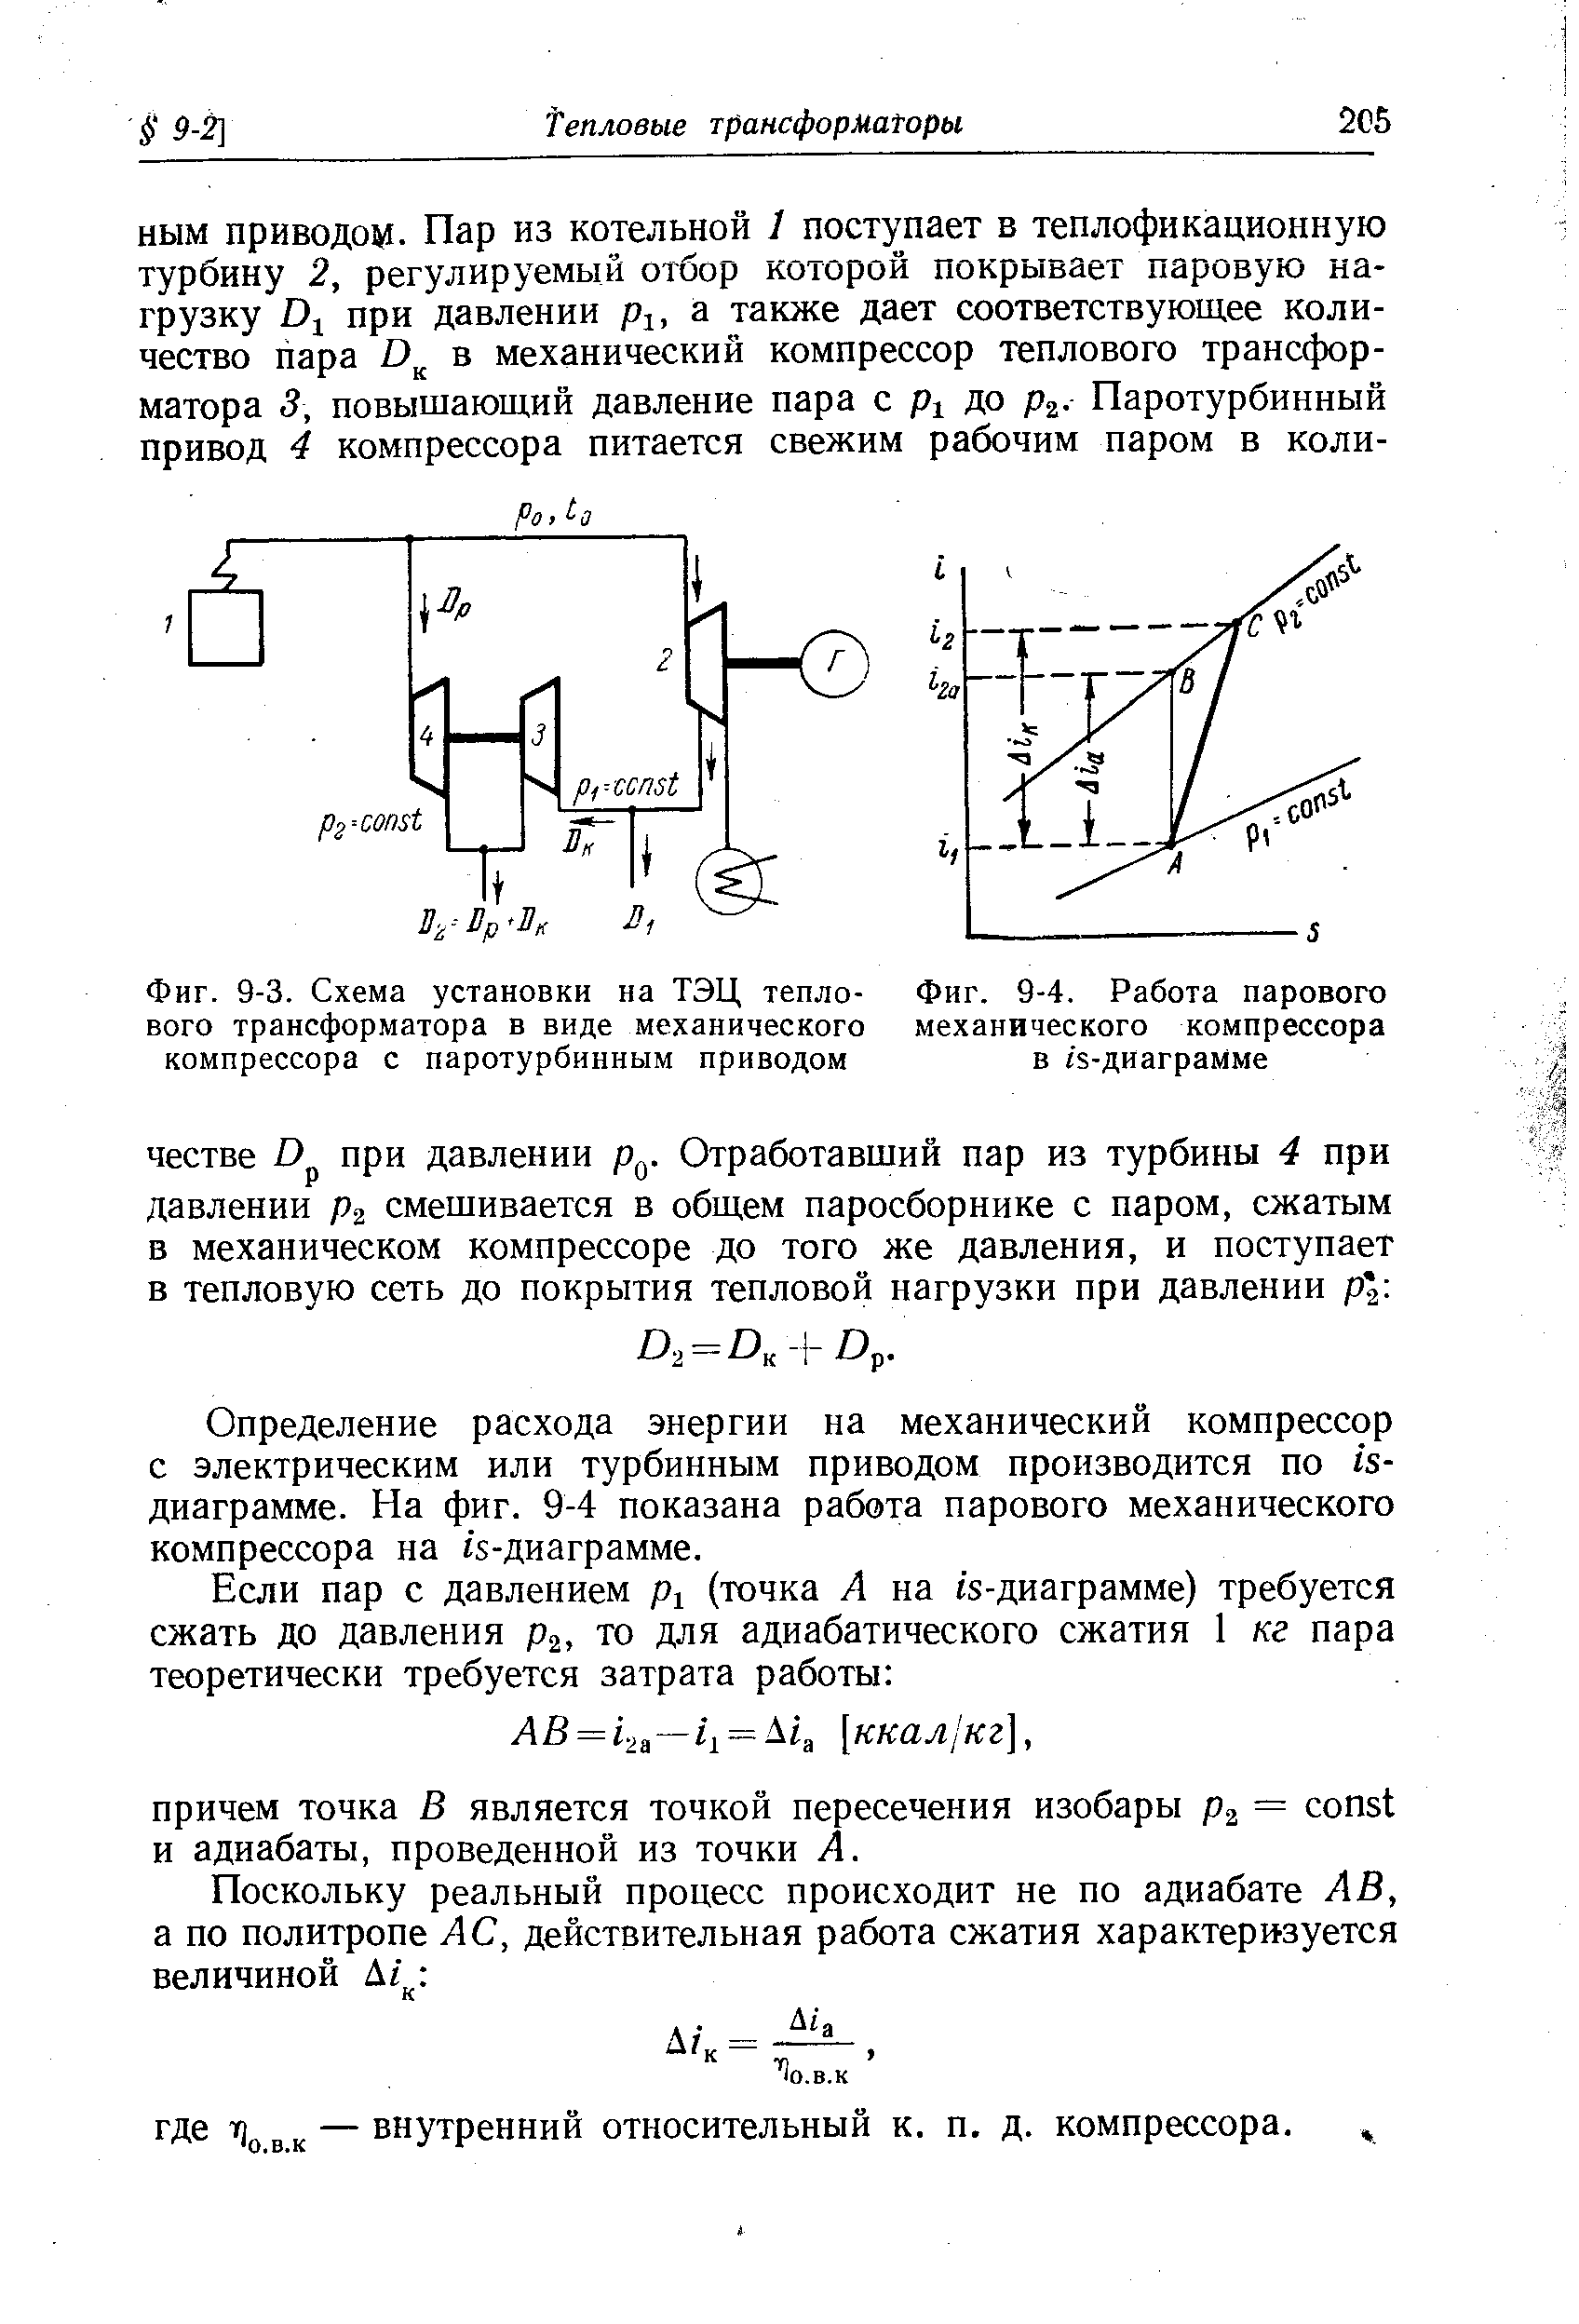 Фиг. 9-4. Работа парового механического компрессора в гз-диаграмме
